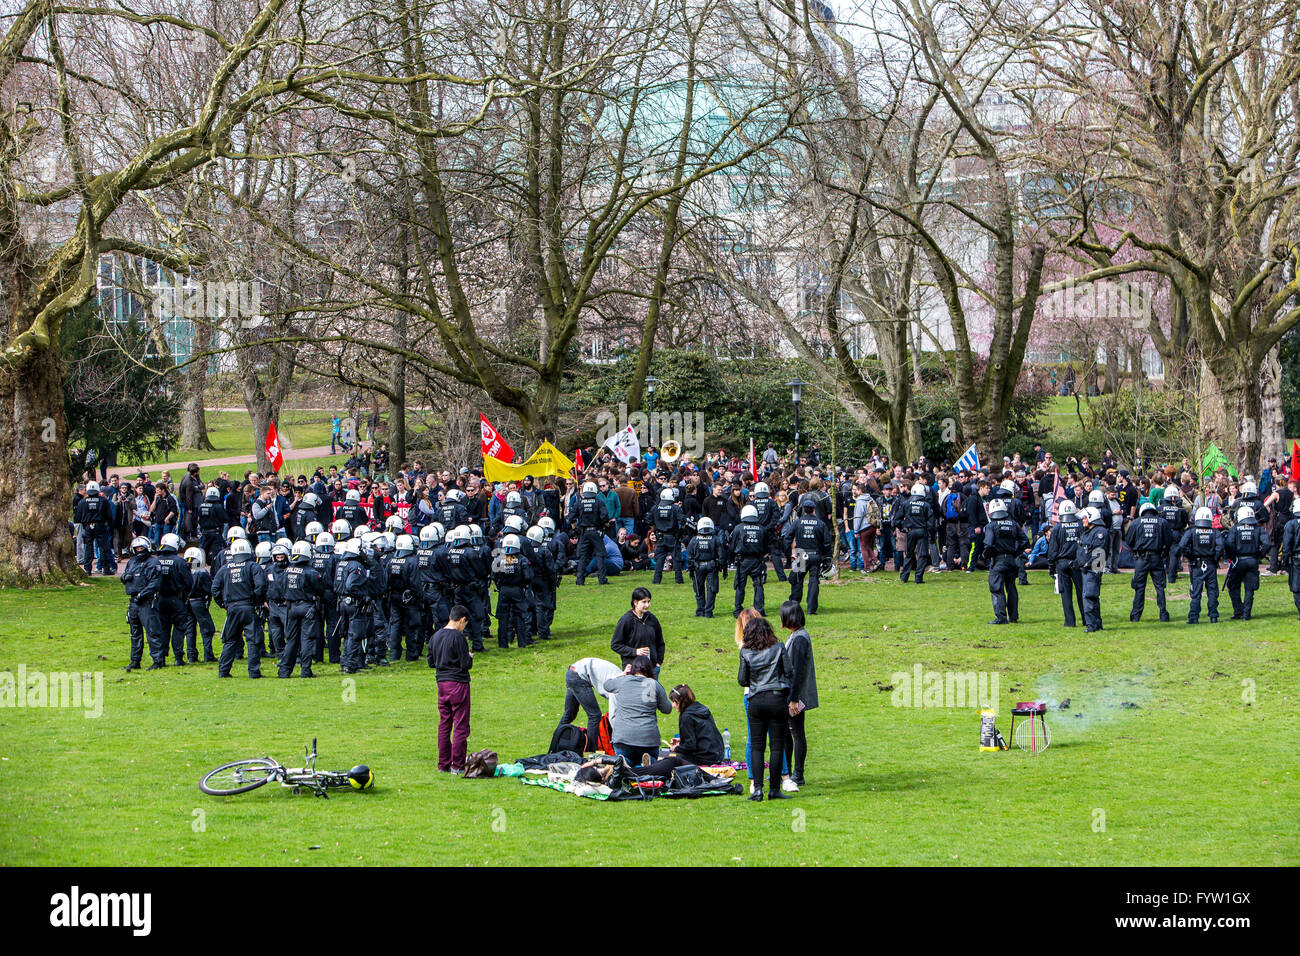 Démonstration de l'aile droite, du parti néo-nazi NPD, à Essen, Allemagne, contre-démonstration de groupes de gauche, opération de police Banque D'Images